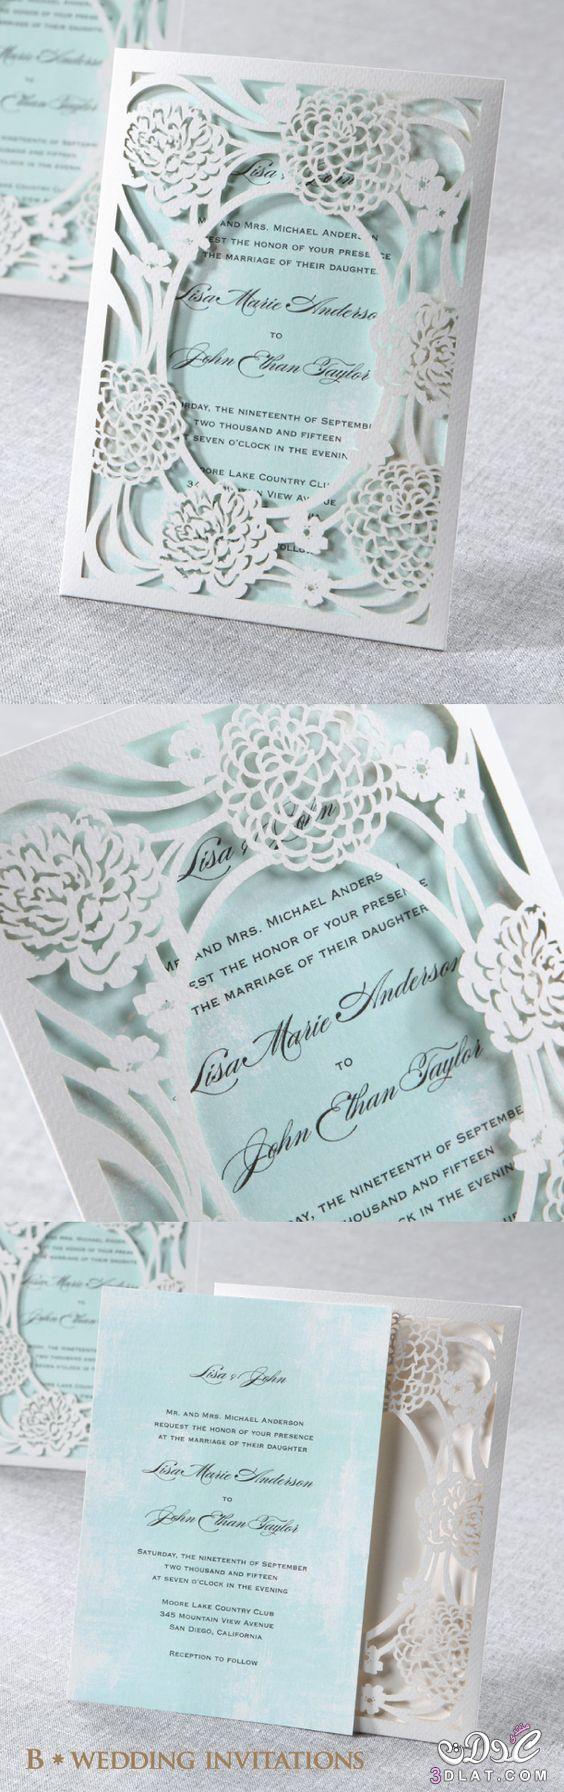 دعوات الزفاف باجمل الالوان ، بطاقات زفاف راقيه وجميله جدا